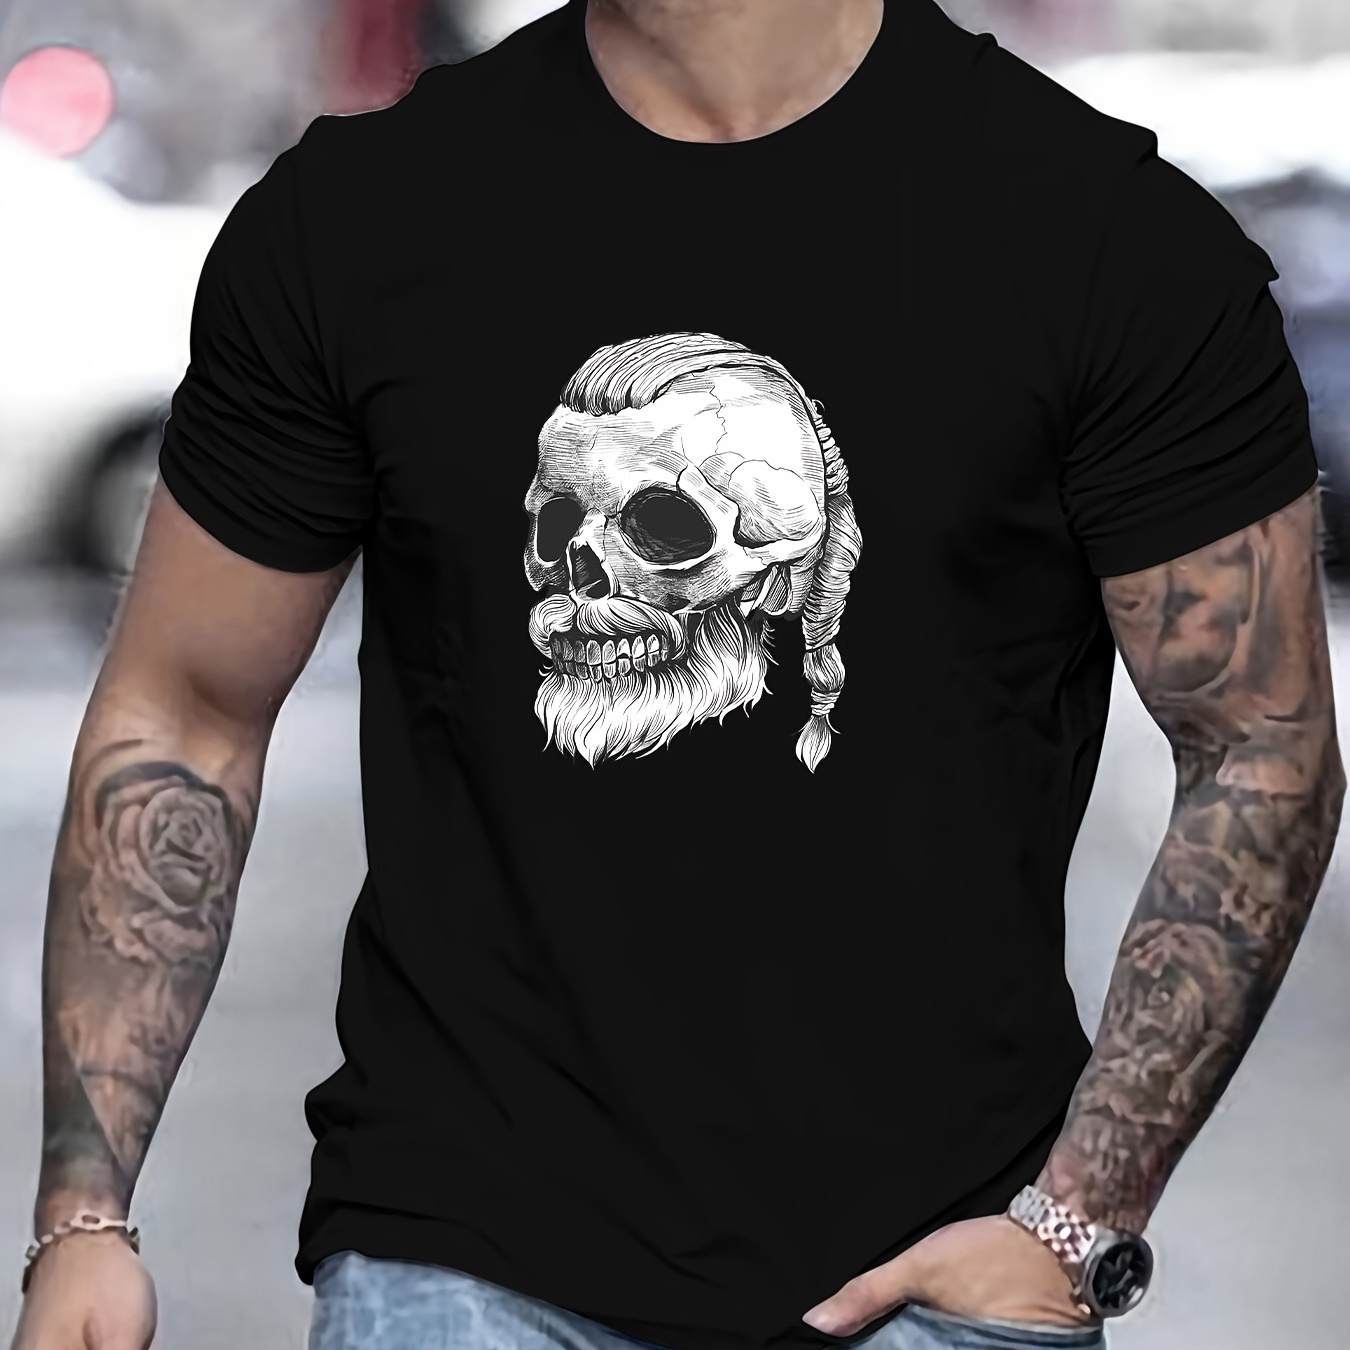 

Viking Skull Print T Shirt, Tees For Men, Casual Short Sleeve T-shirt For Summer